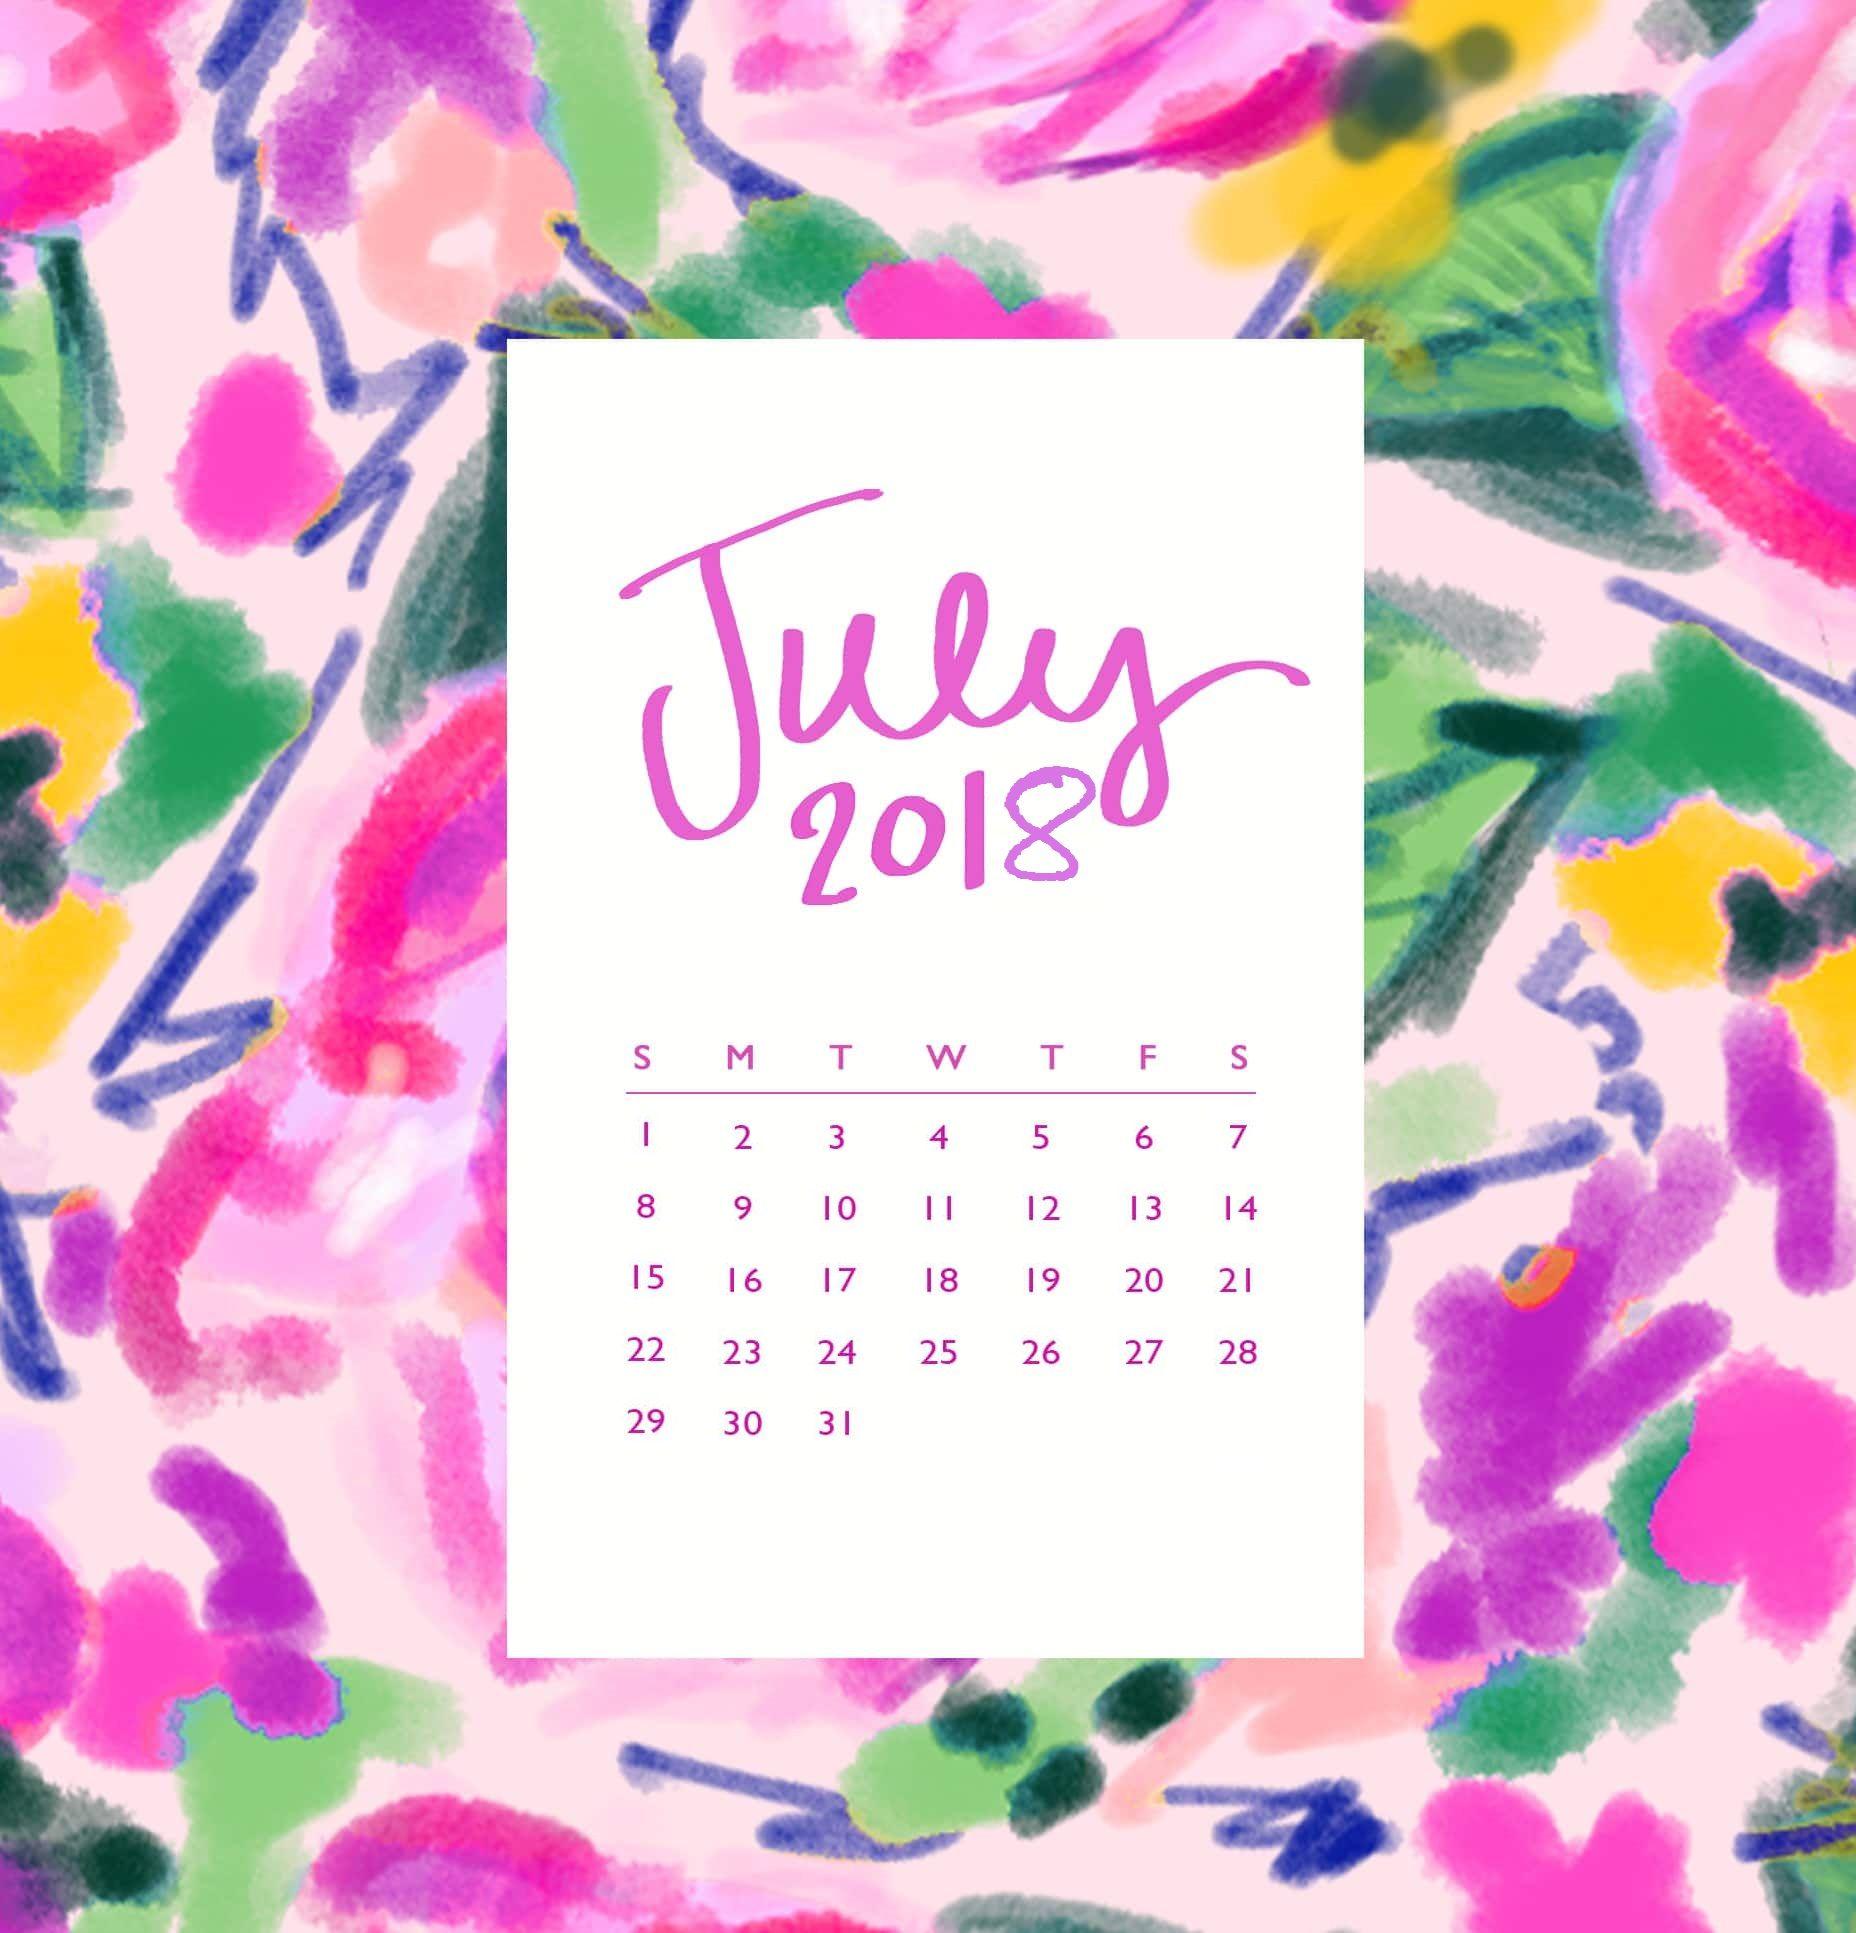 July 2018 iPhone Calendar Wallpaper